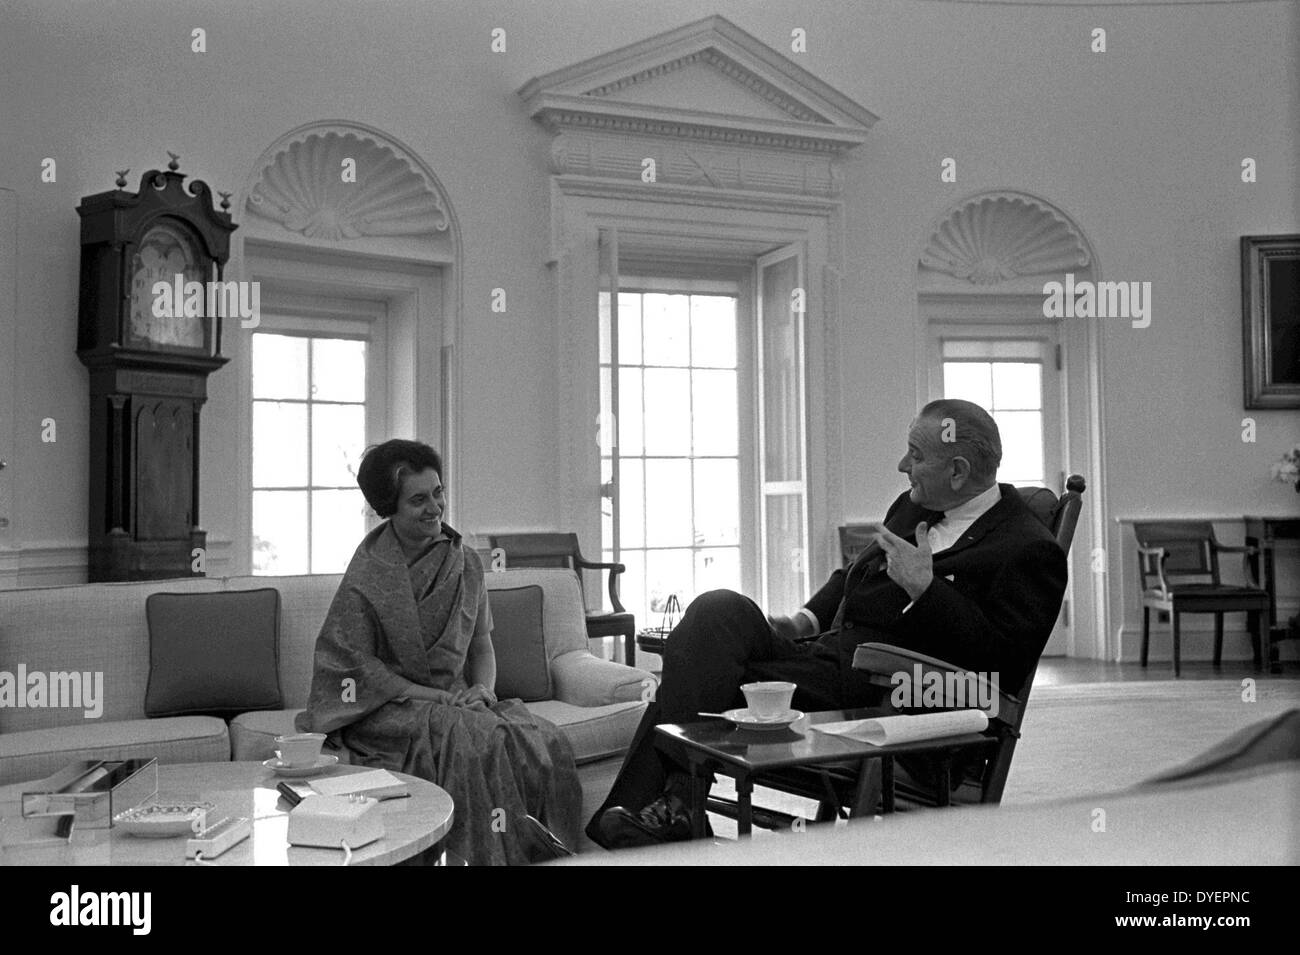 Indira Gandhi 1917-1984, war der dritte Premierminister von Indien und eine zentrale Figur der Indian National Congress Party. Indira Gandhi Treffen mit Präsident Lyndon B. Johnson im Oval Office, Washington DC, März 1966. Stockfoto